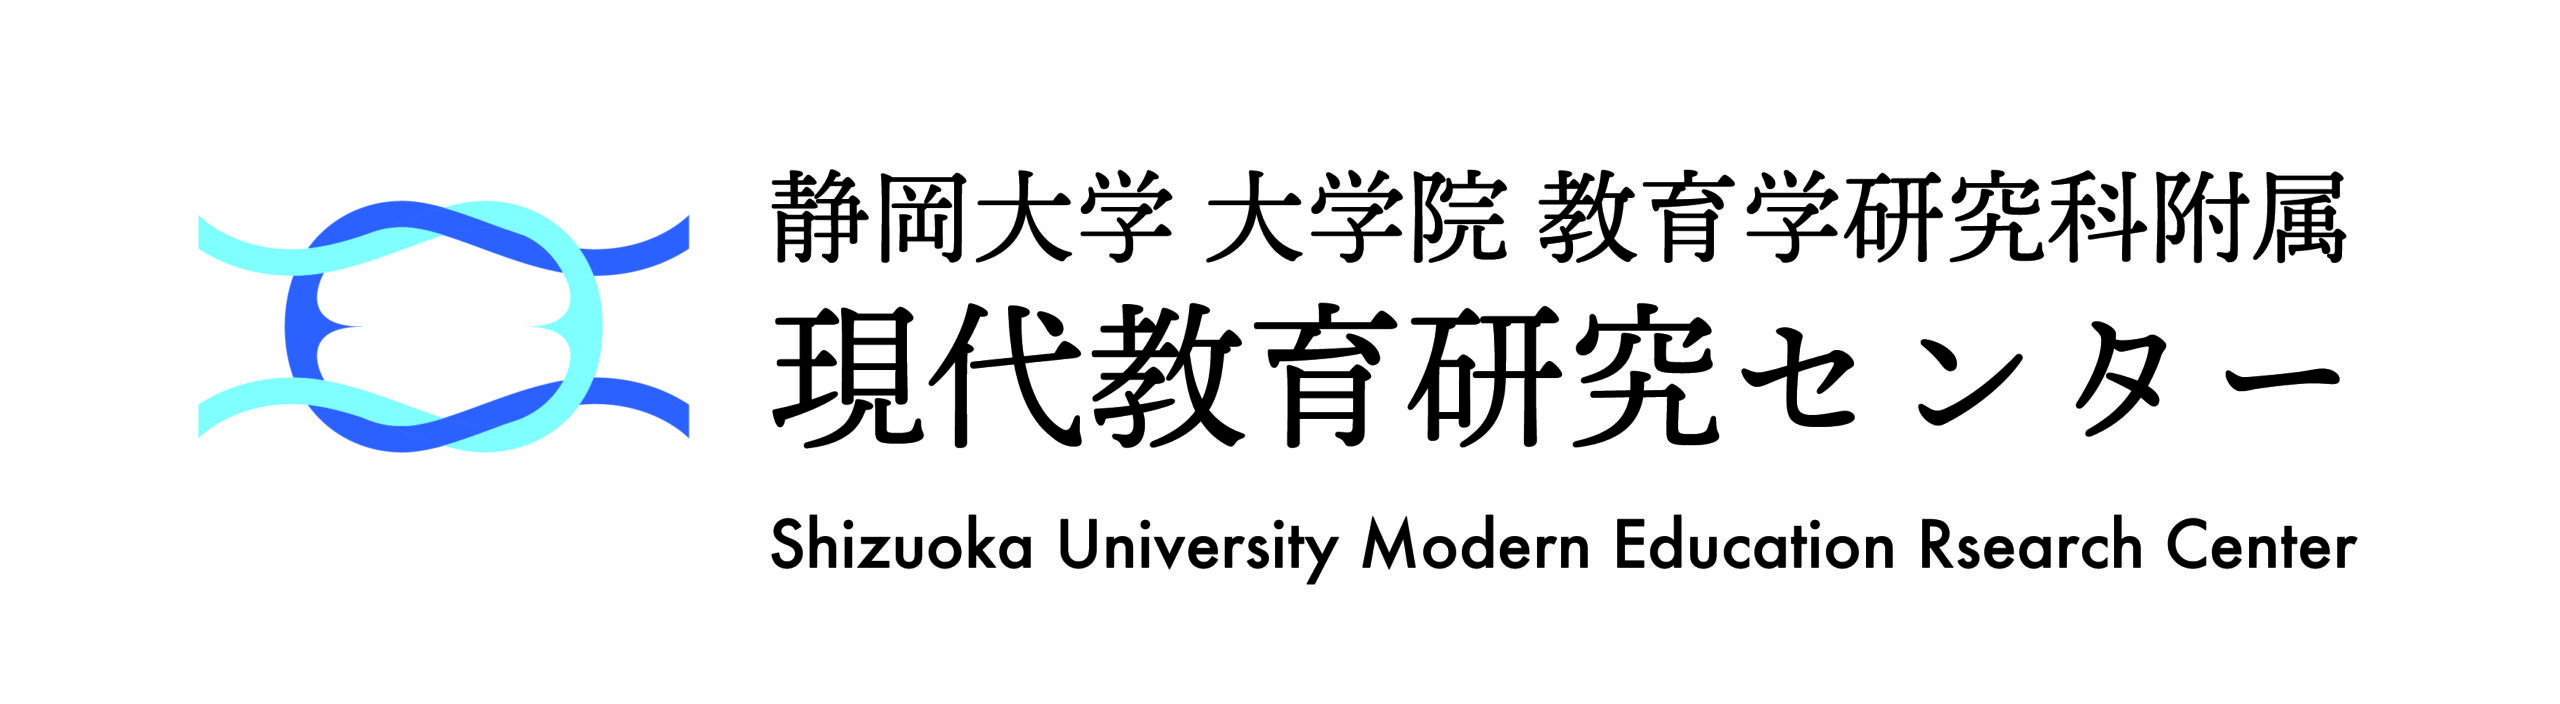 静岡大学大学院教育学研究科付属現代教育研究センター